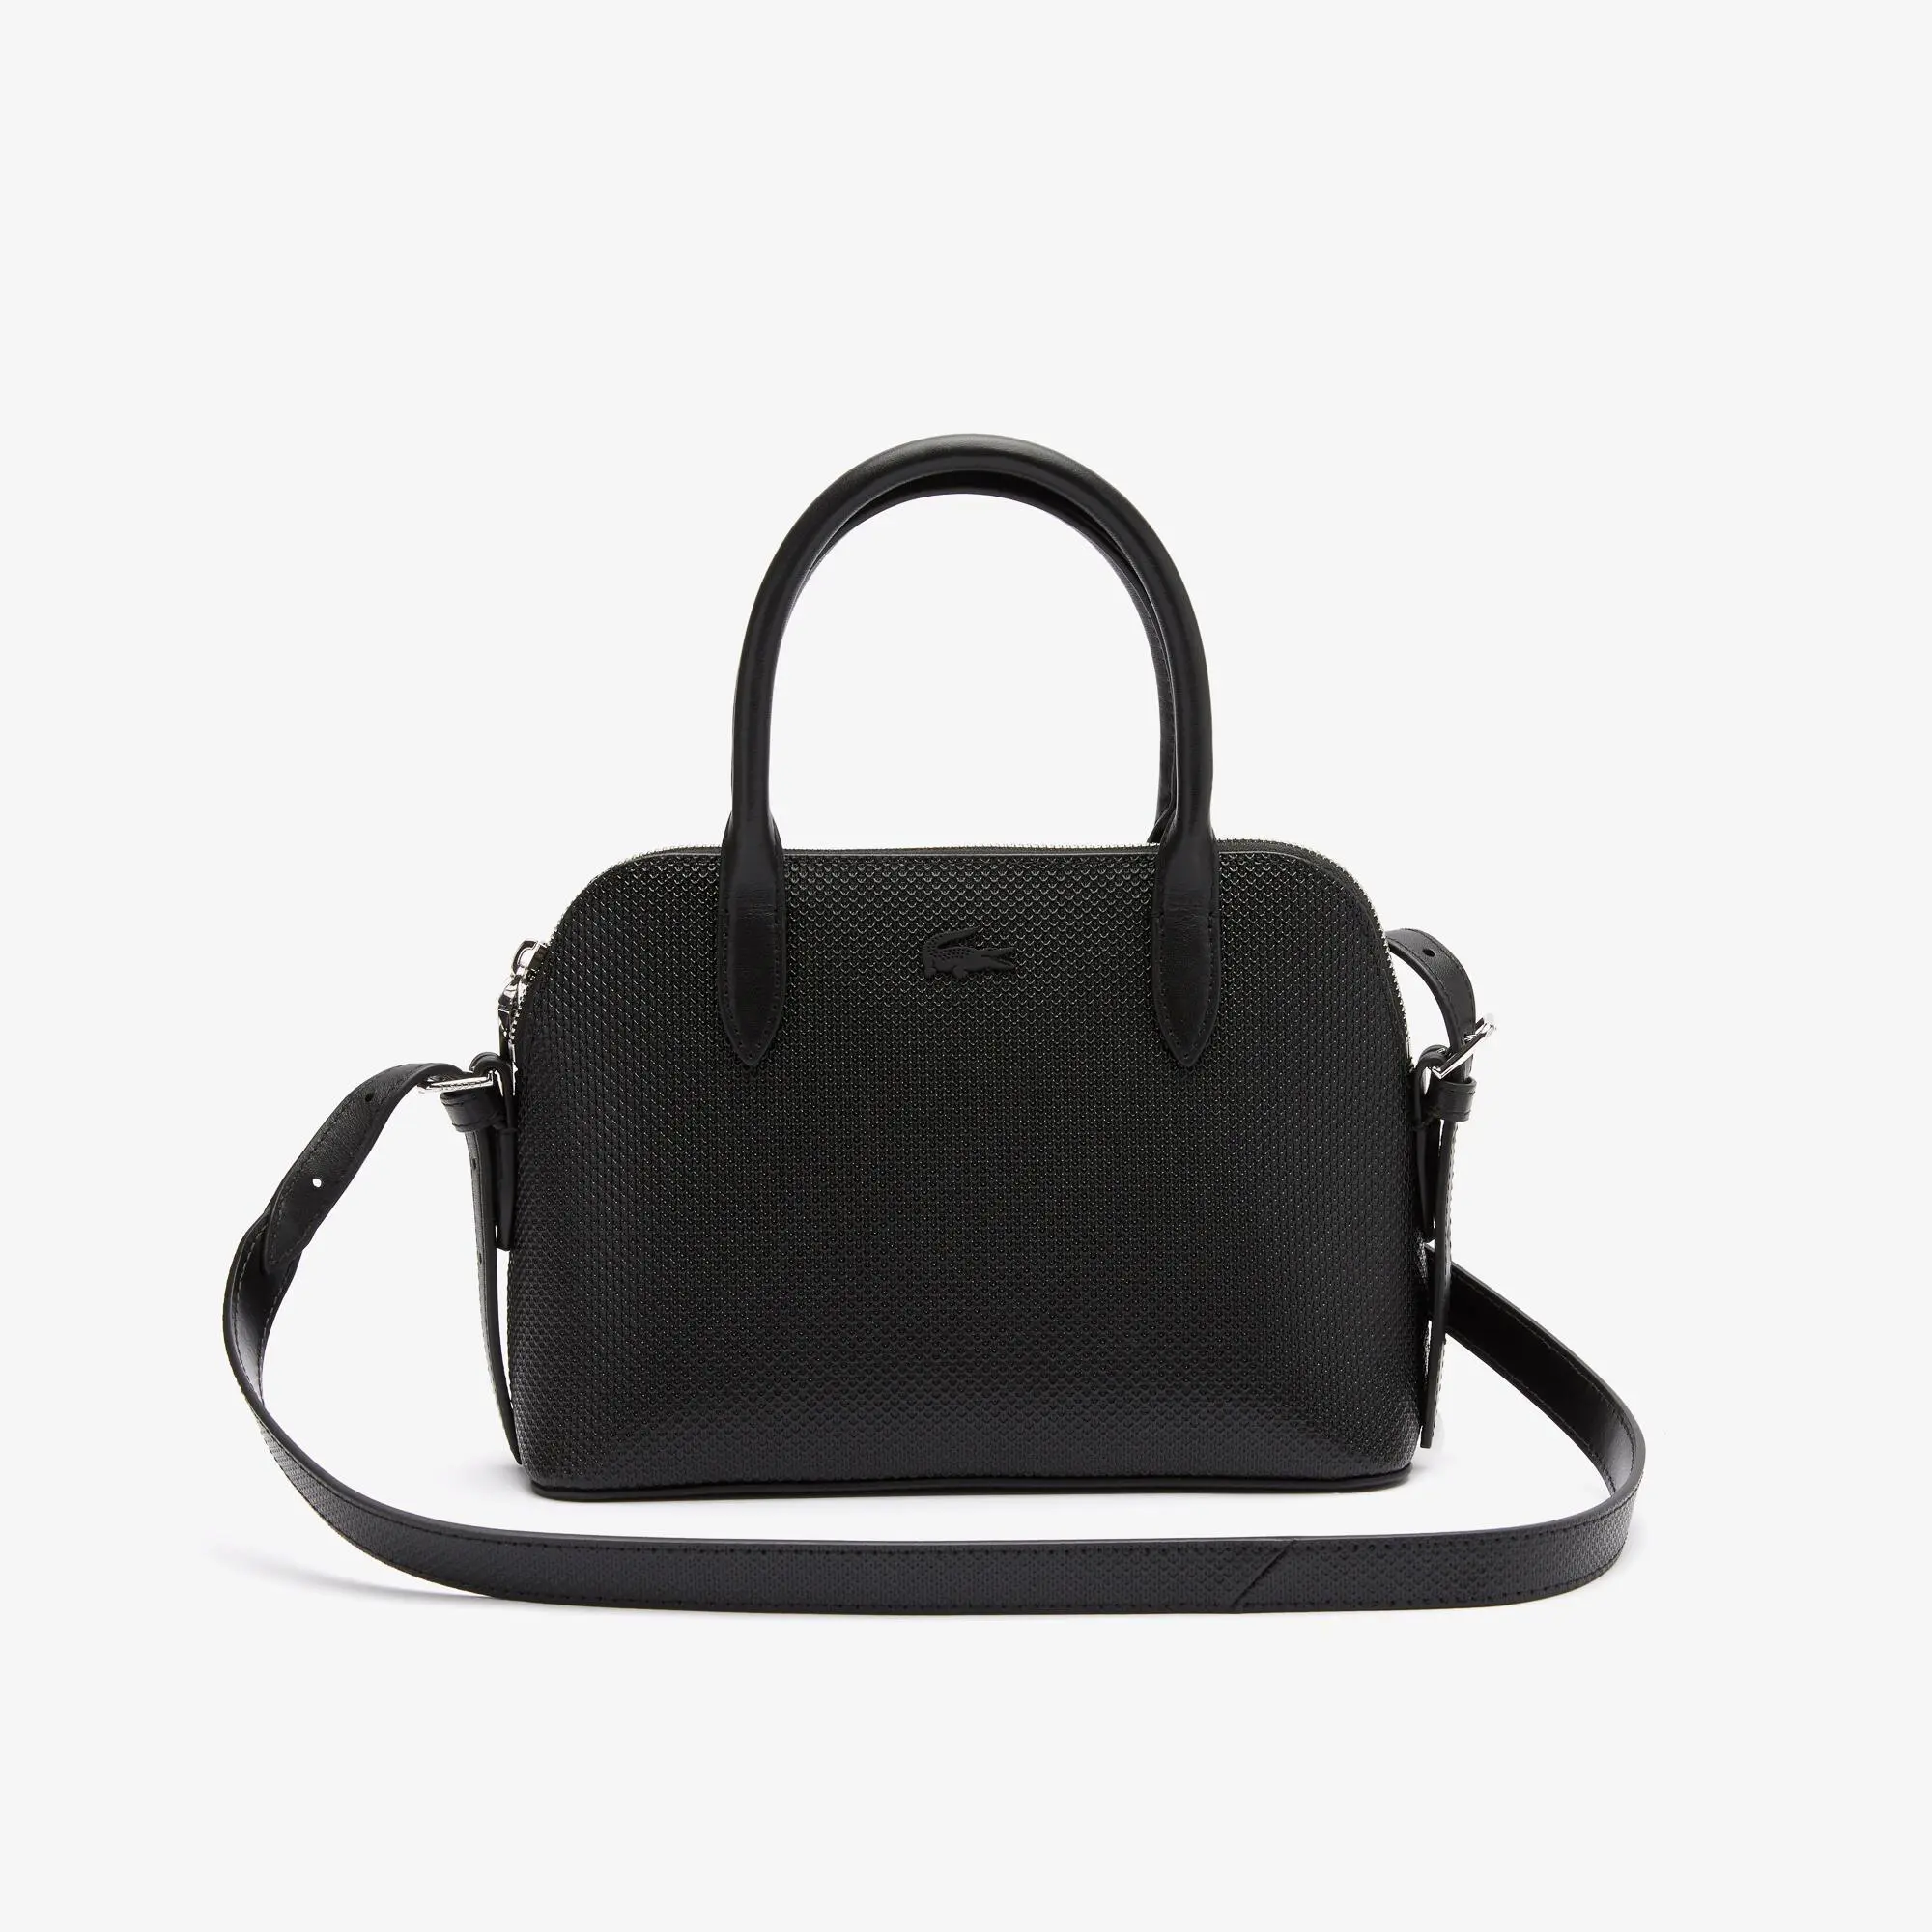 Lacoste Women's Chantaco Piqué Leather Top Handle Bag. 2